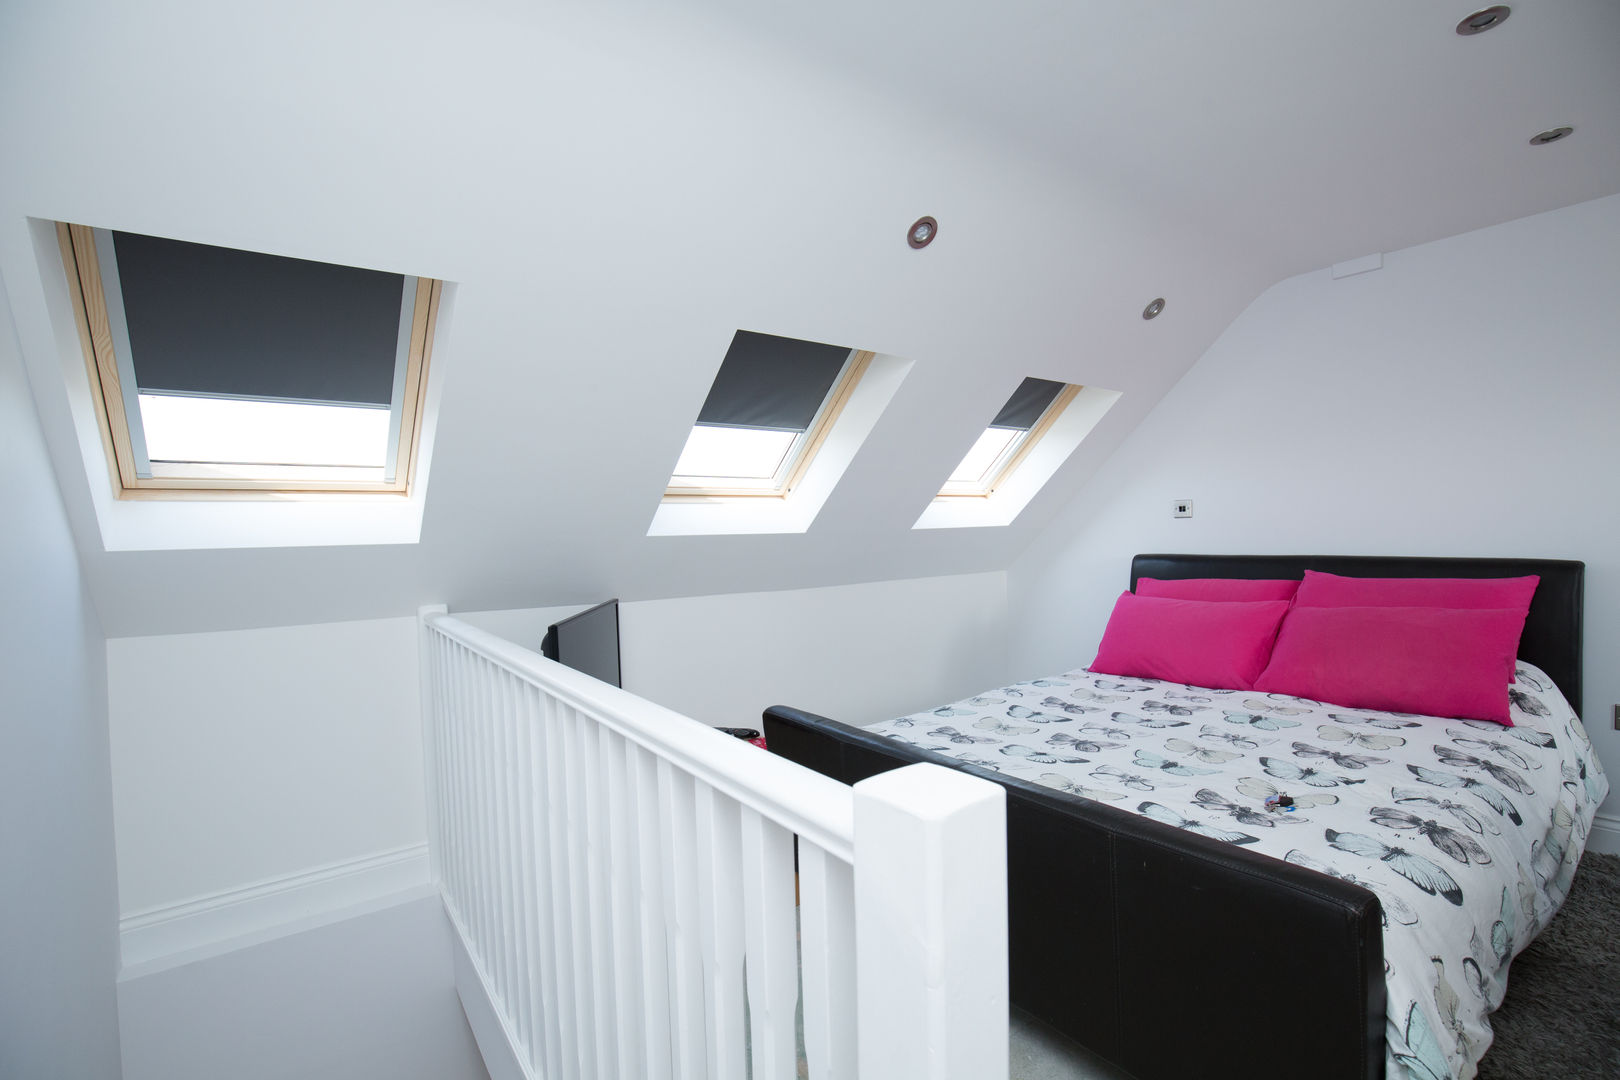 A hidden bedroom, perfect for your teen! homify 臥室 bedroom,attic bedroom,loft conversion